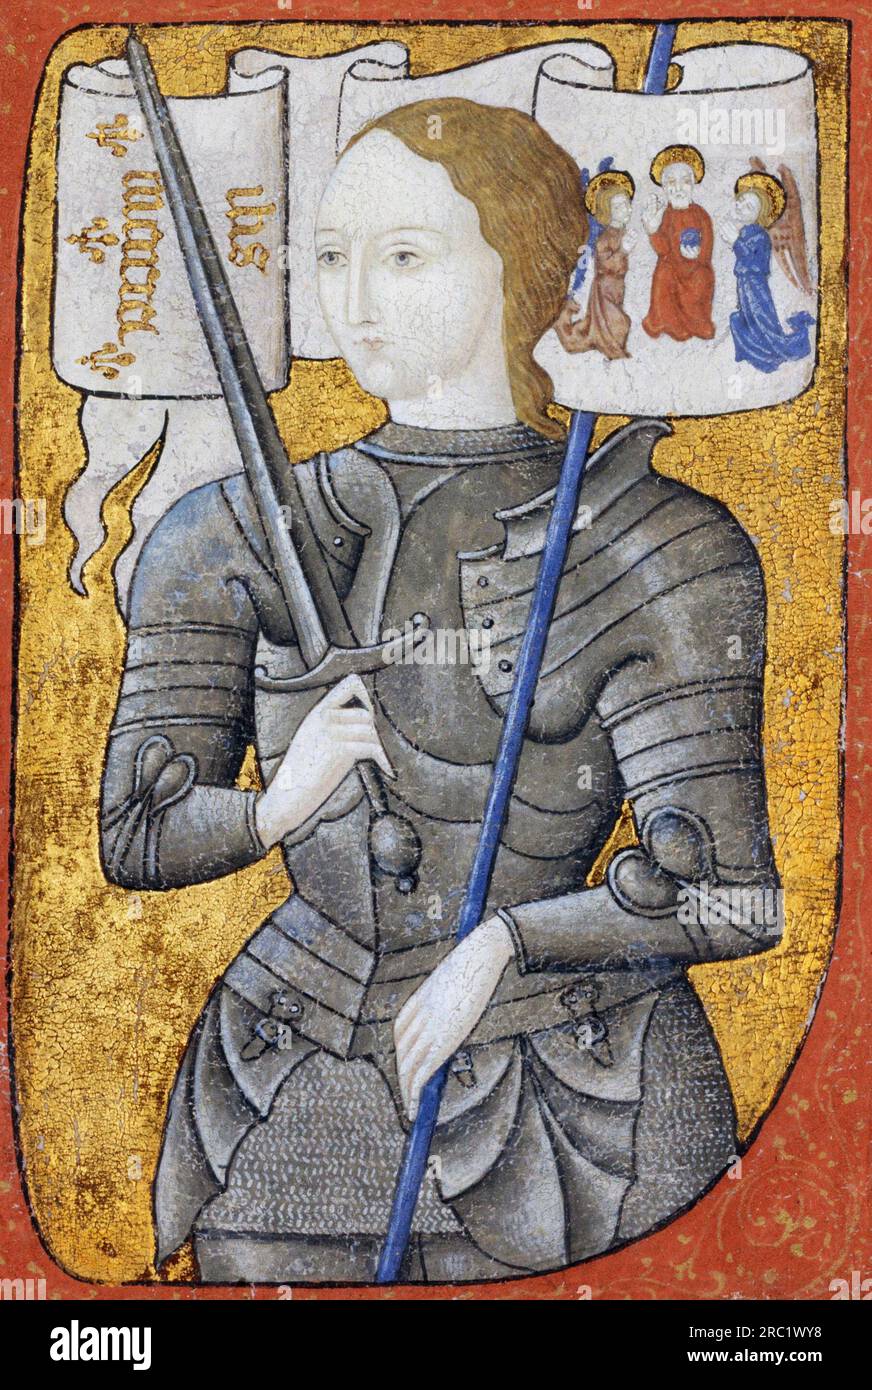 France : Jeanne d'Arc / Jeanne d'Arc (c. 1412 - 30 mai 1431). Peinture sur parchemin, c. 1485. Sainte Jeanne d'Arc, surnommée « la servante d'Orléans », est considérée comme une héroïne nationale de France et une sainte catholique. Paysanne née dans l'est de la France qui revendiquait la direction divine, elle conduisit l'armée française à plusieurs victoires importantes au cours de la guerre de cent ans, qui ouvrit la voie au couronnement de Charles VII Elle est capturée par les Bourguignons, vendue aux Anglais, jugée par un tribunal ecclésiastique et brûlée sur le bûcher à l'âge de 19 ans. Banque D'Images